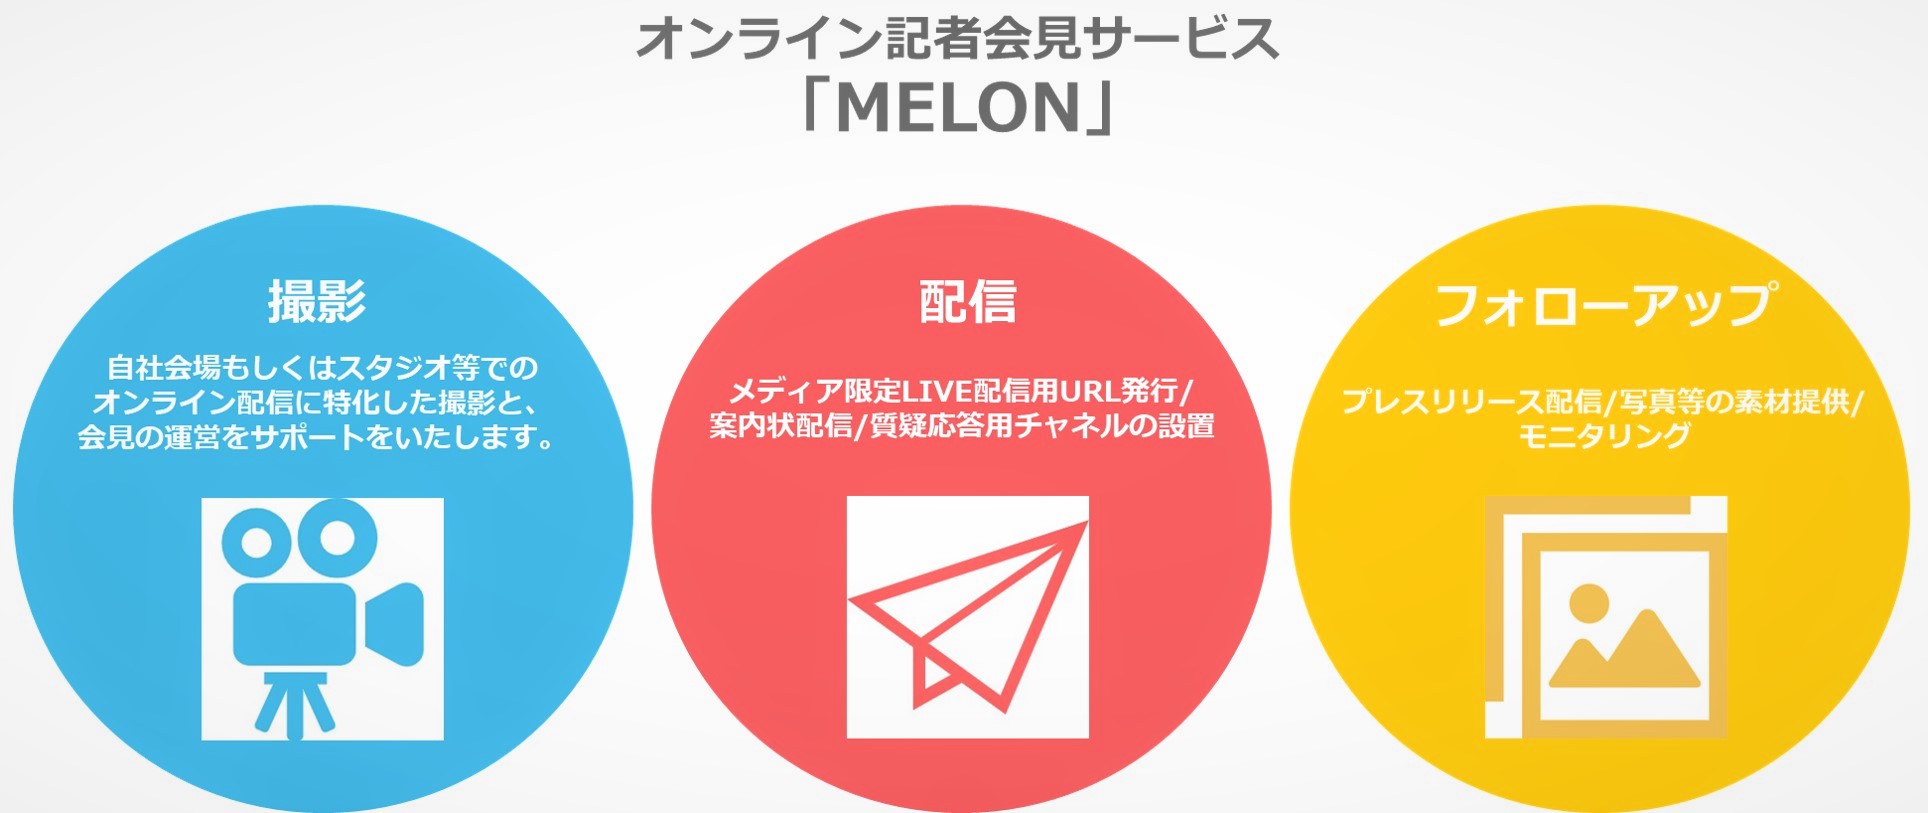 オンライン記者会見サービス Melon 提供開始 株式会社ストーリーズ オン ヘルスケアのプレスリリース